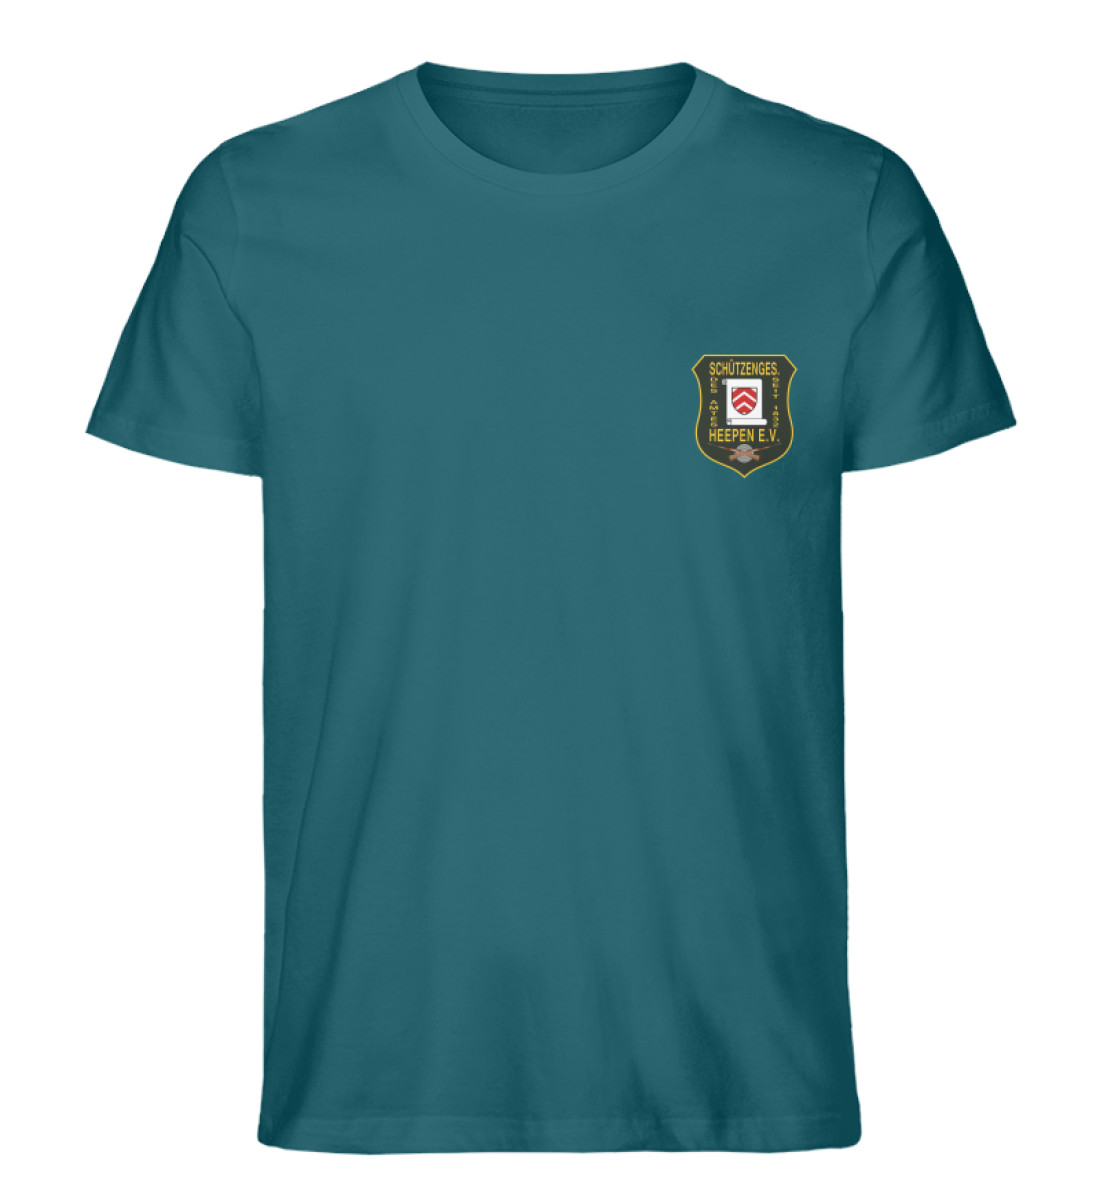 Schützengesellschaft Heepen - Herren Premium Organic Shirt-6889